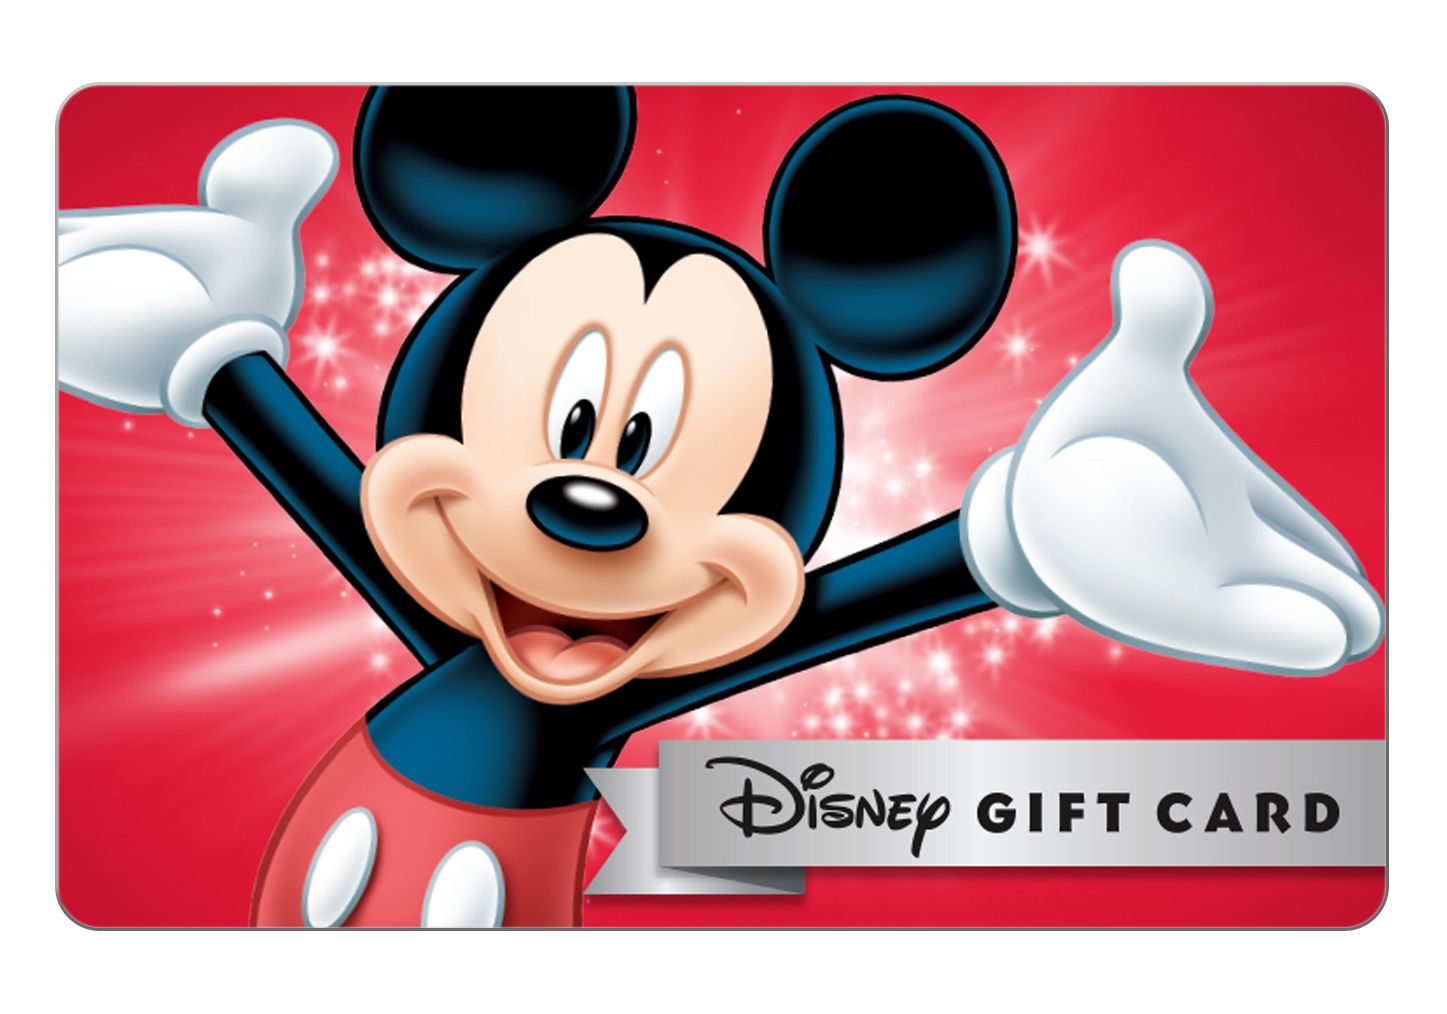 Apple Bulk Gift Cards - Buy Apple Gift Cards In Bulk